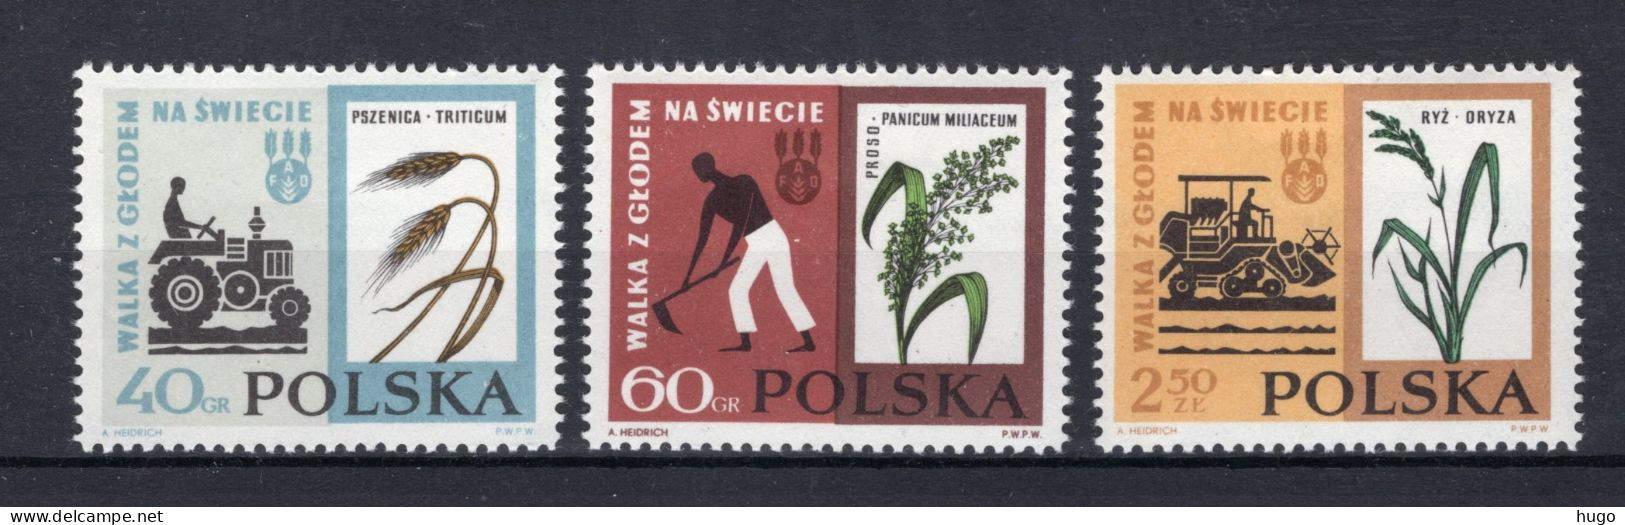 POLEN Yt. 1229/1231 MNH 1963 - Unused Stamps